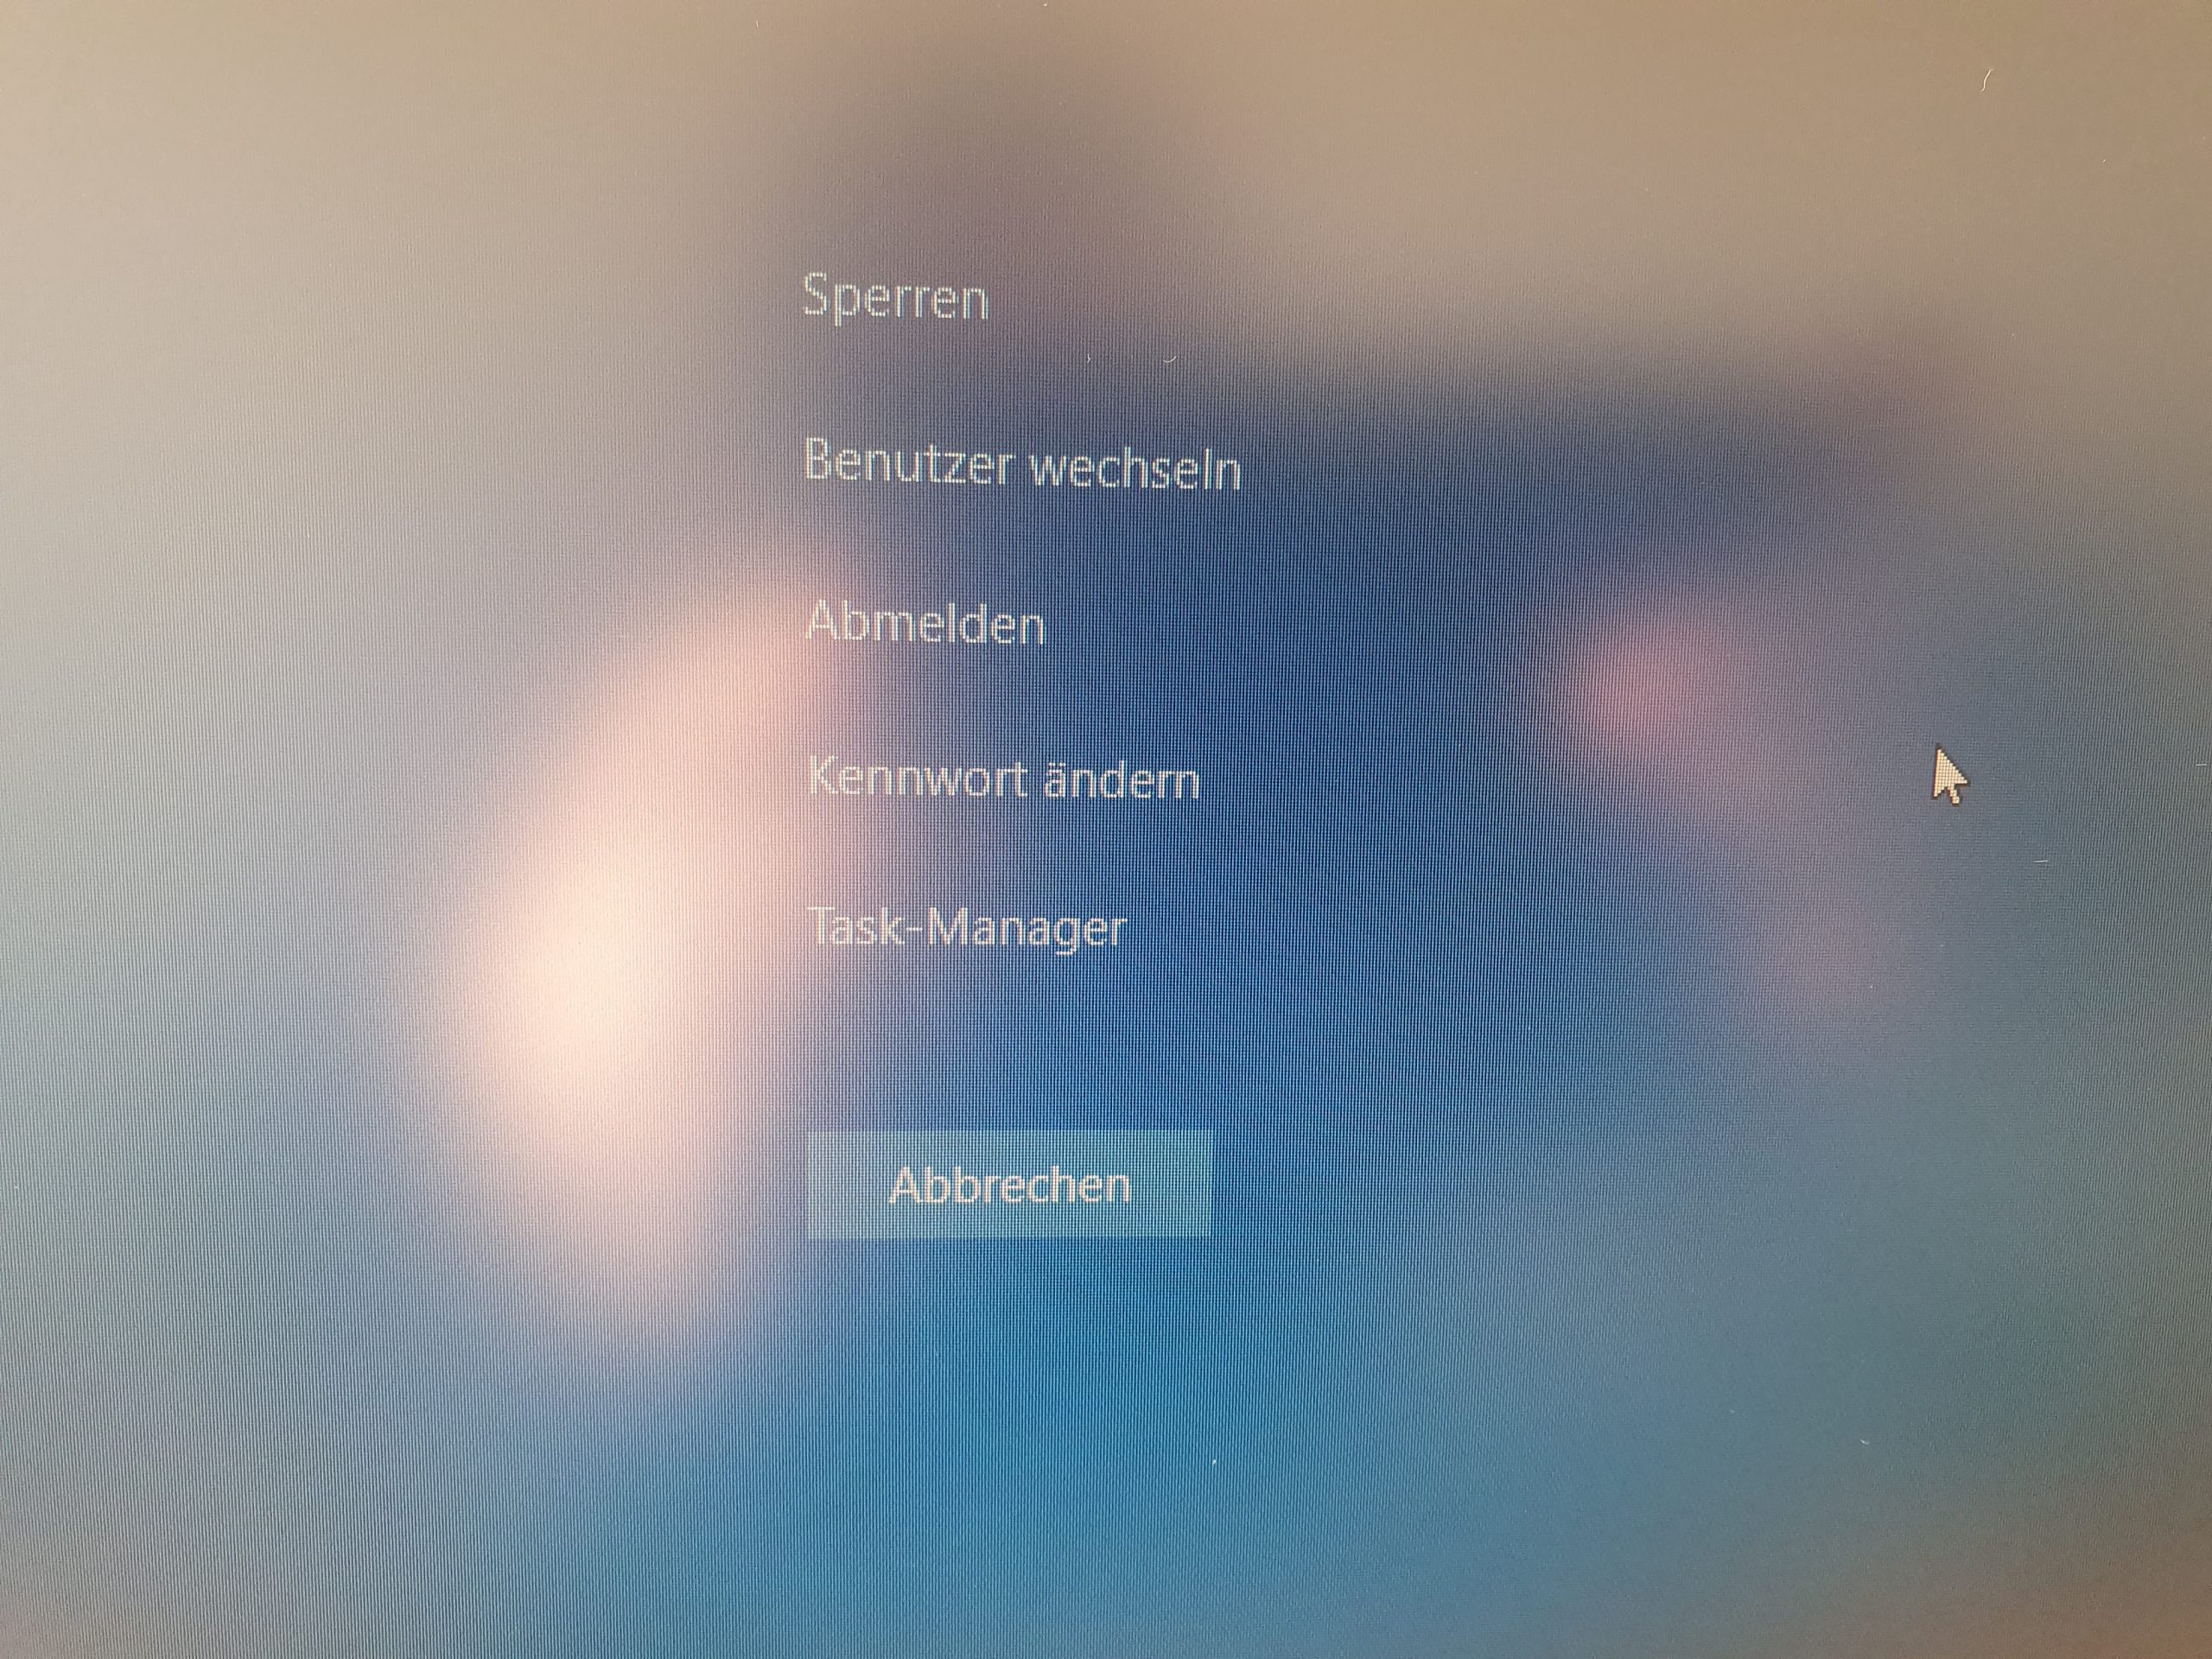 Kenwort ändern unter Windows 10